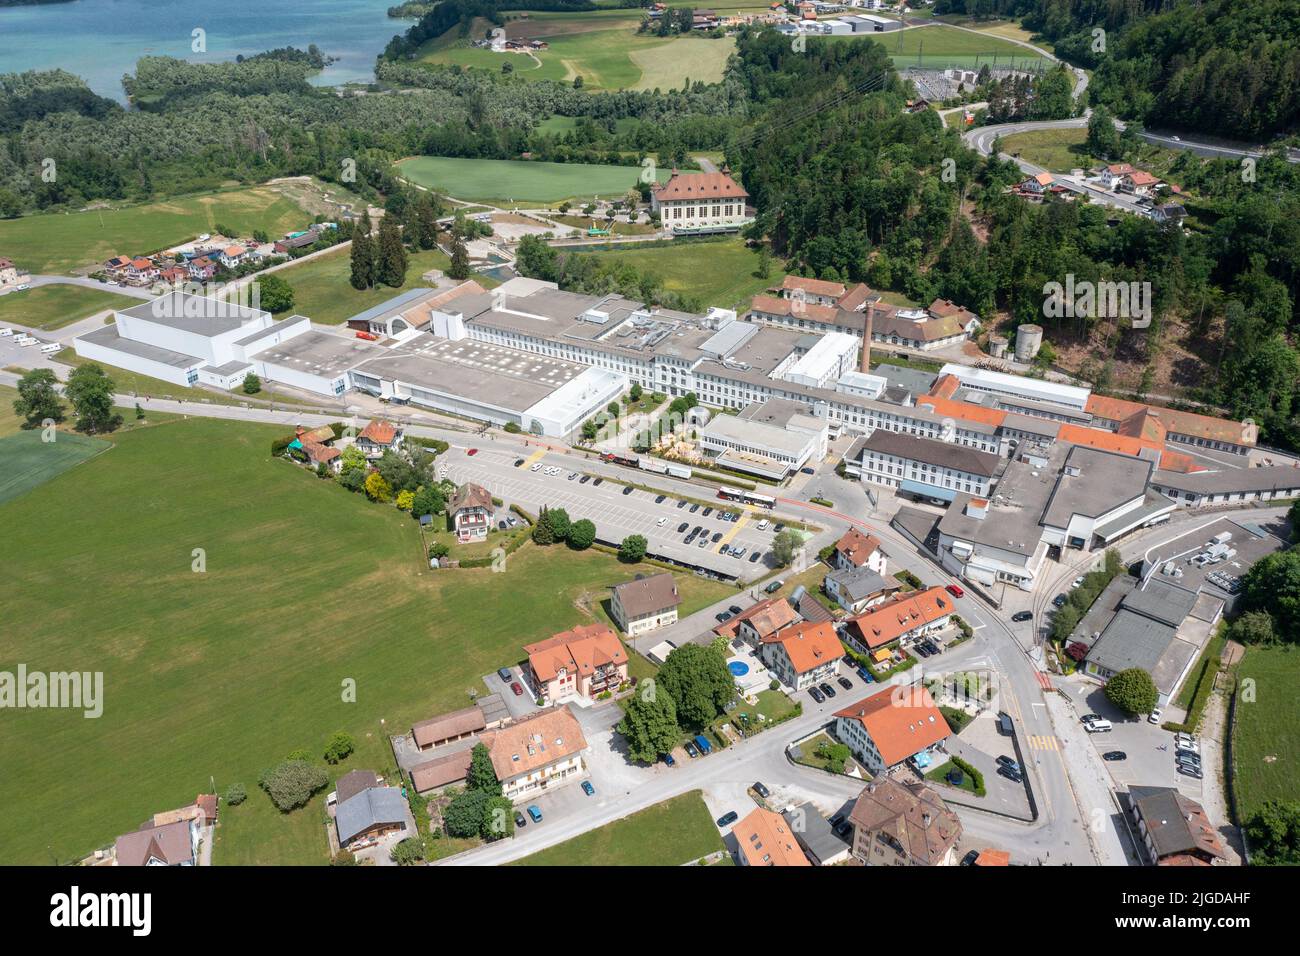 Maison Cailler, fábrica de chocolate, Broc, Suiza Foto de stock